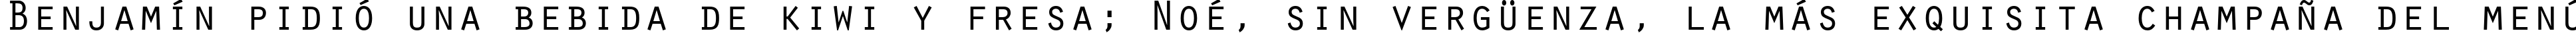 Пример написания шрифтом Orator Std Medium текста на испанском